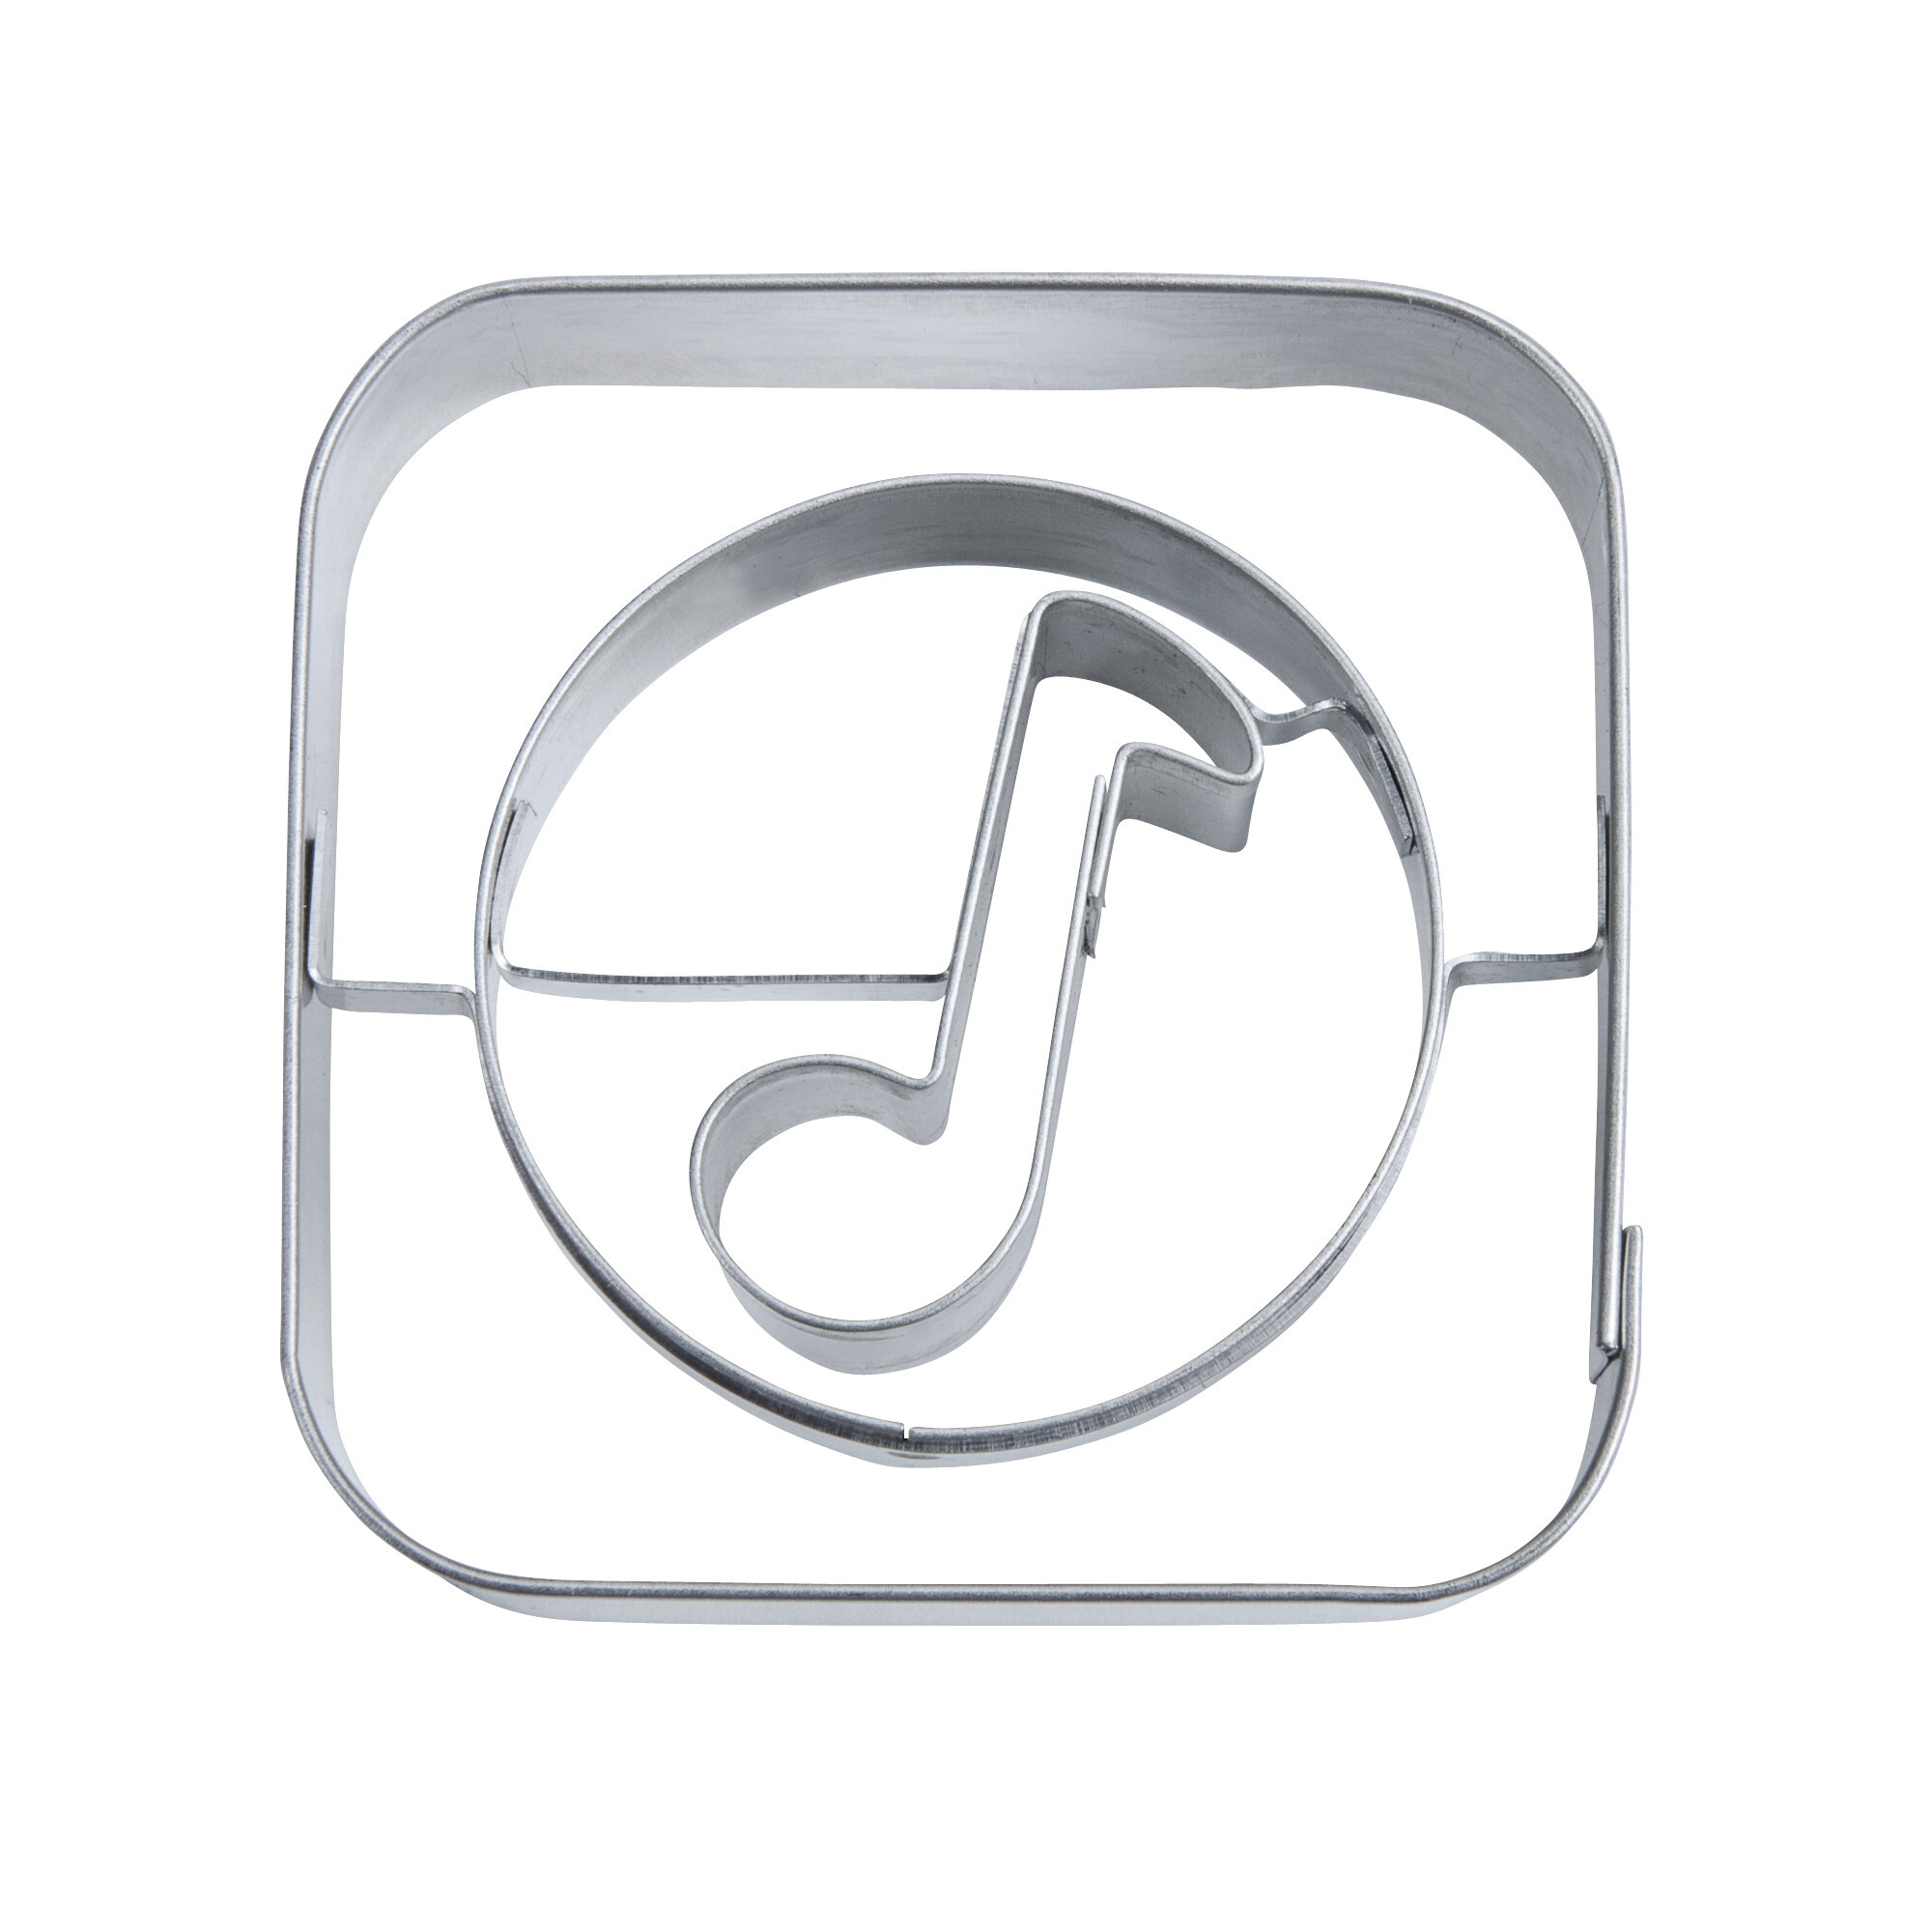 Präge-Ausstecher – App-Cutter Music